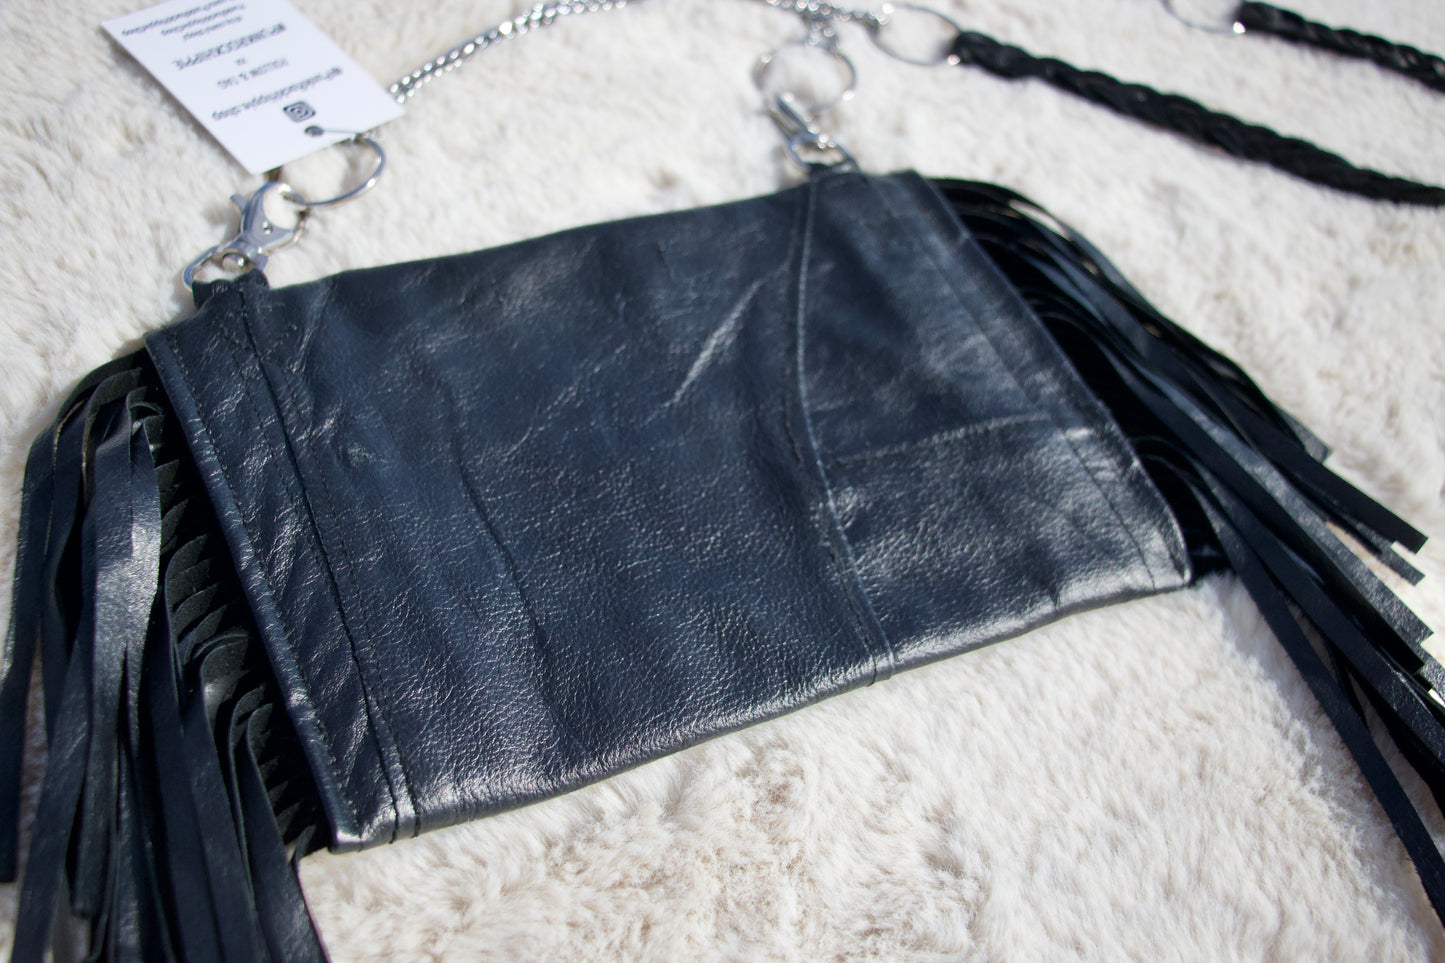 Black Patchwork Leather Handbag